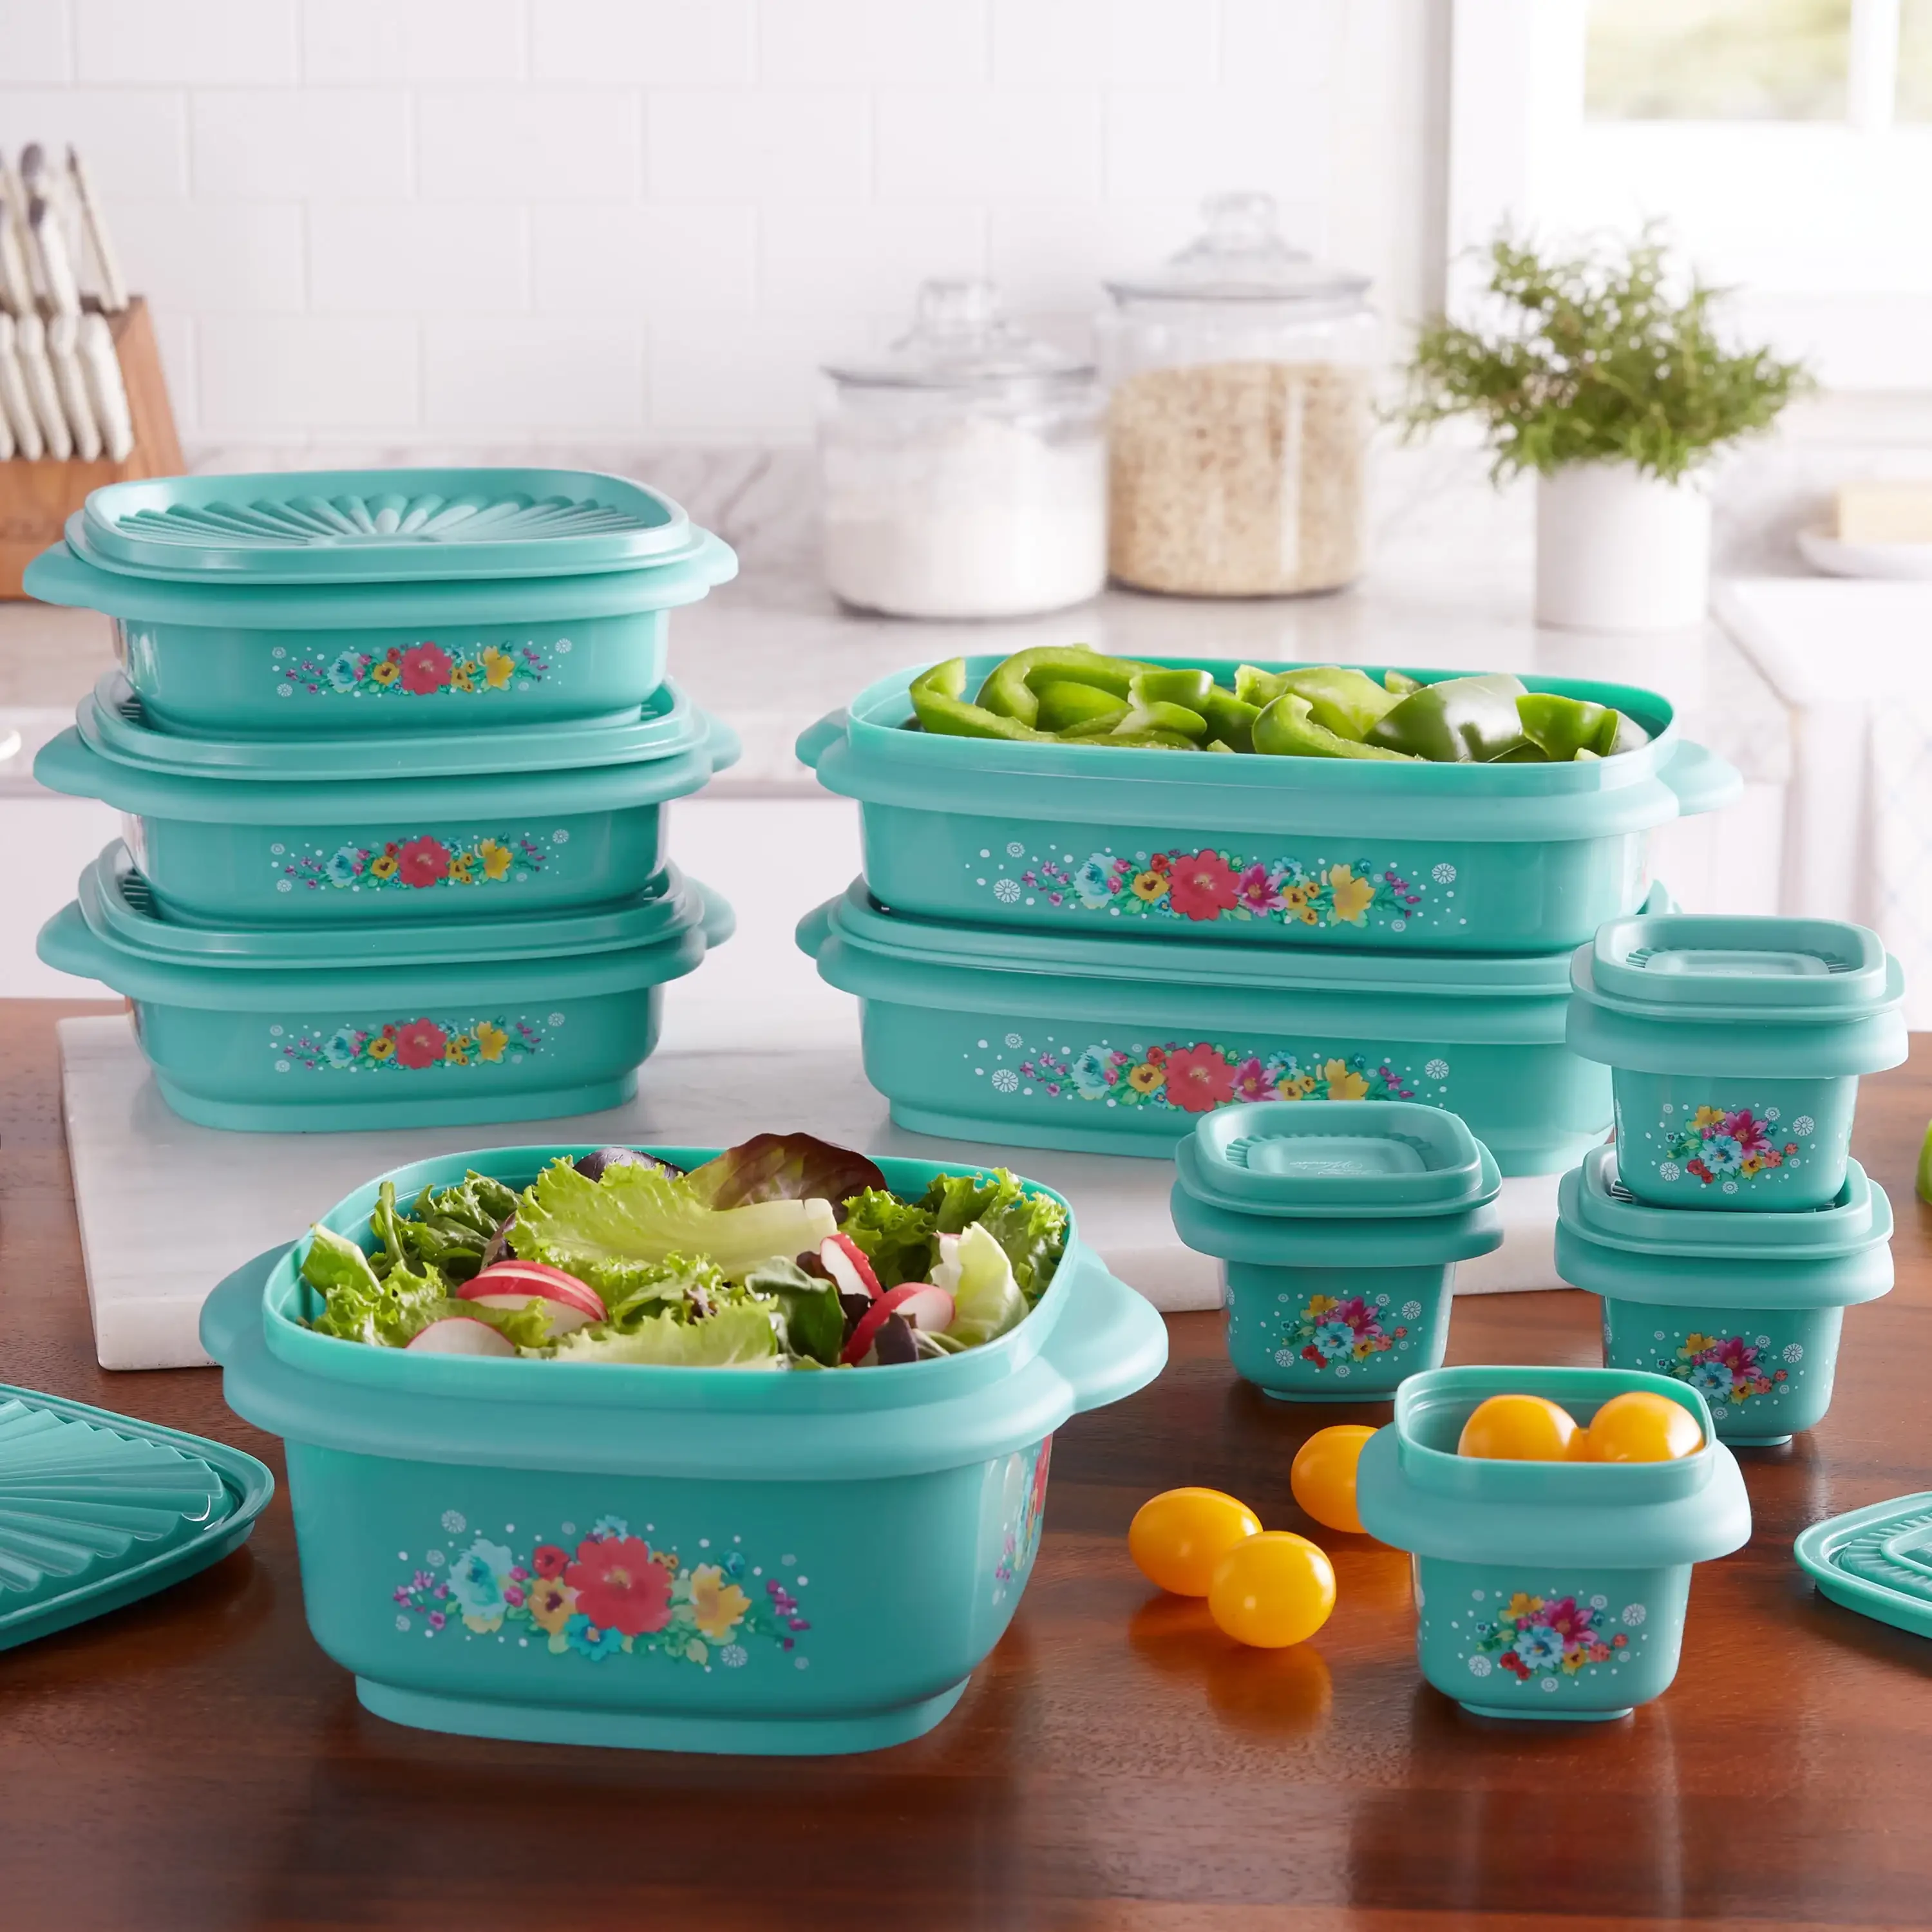 

20 Piece Plastic Food Storage Container Variety Set, Breezy Blossom Kitchen Organizer Trays Decorative Cutlery Organizer